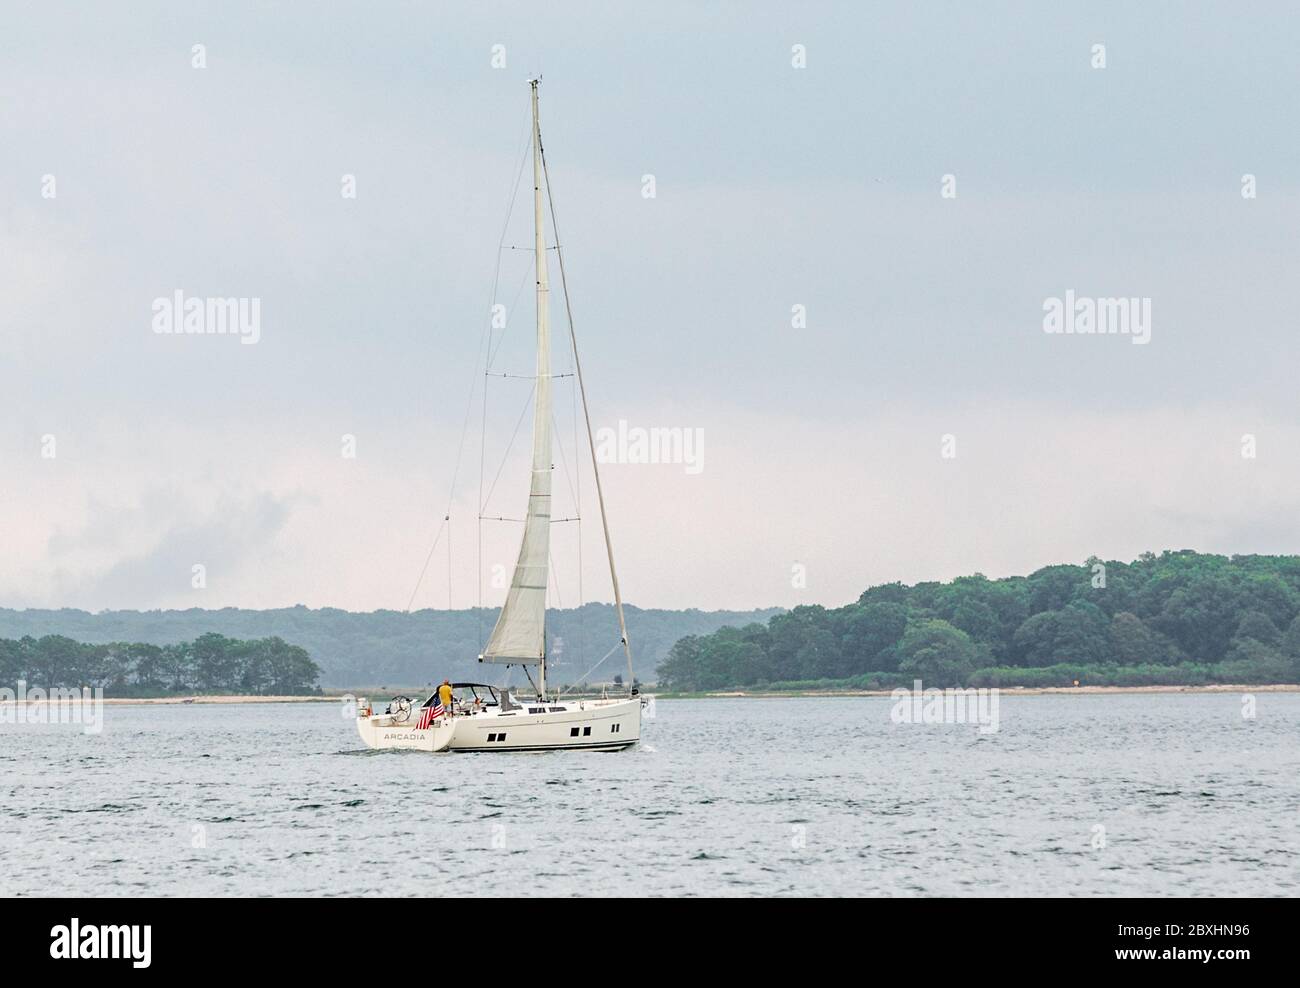 Sailing vessel, Arcadia under sail near Sag Harbor, NY Stock Photo